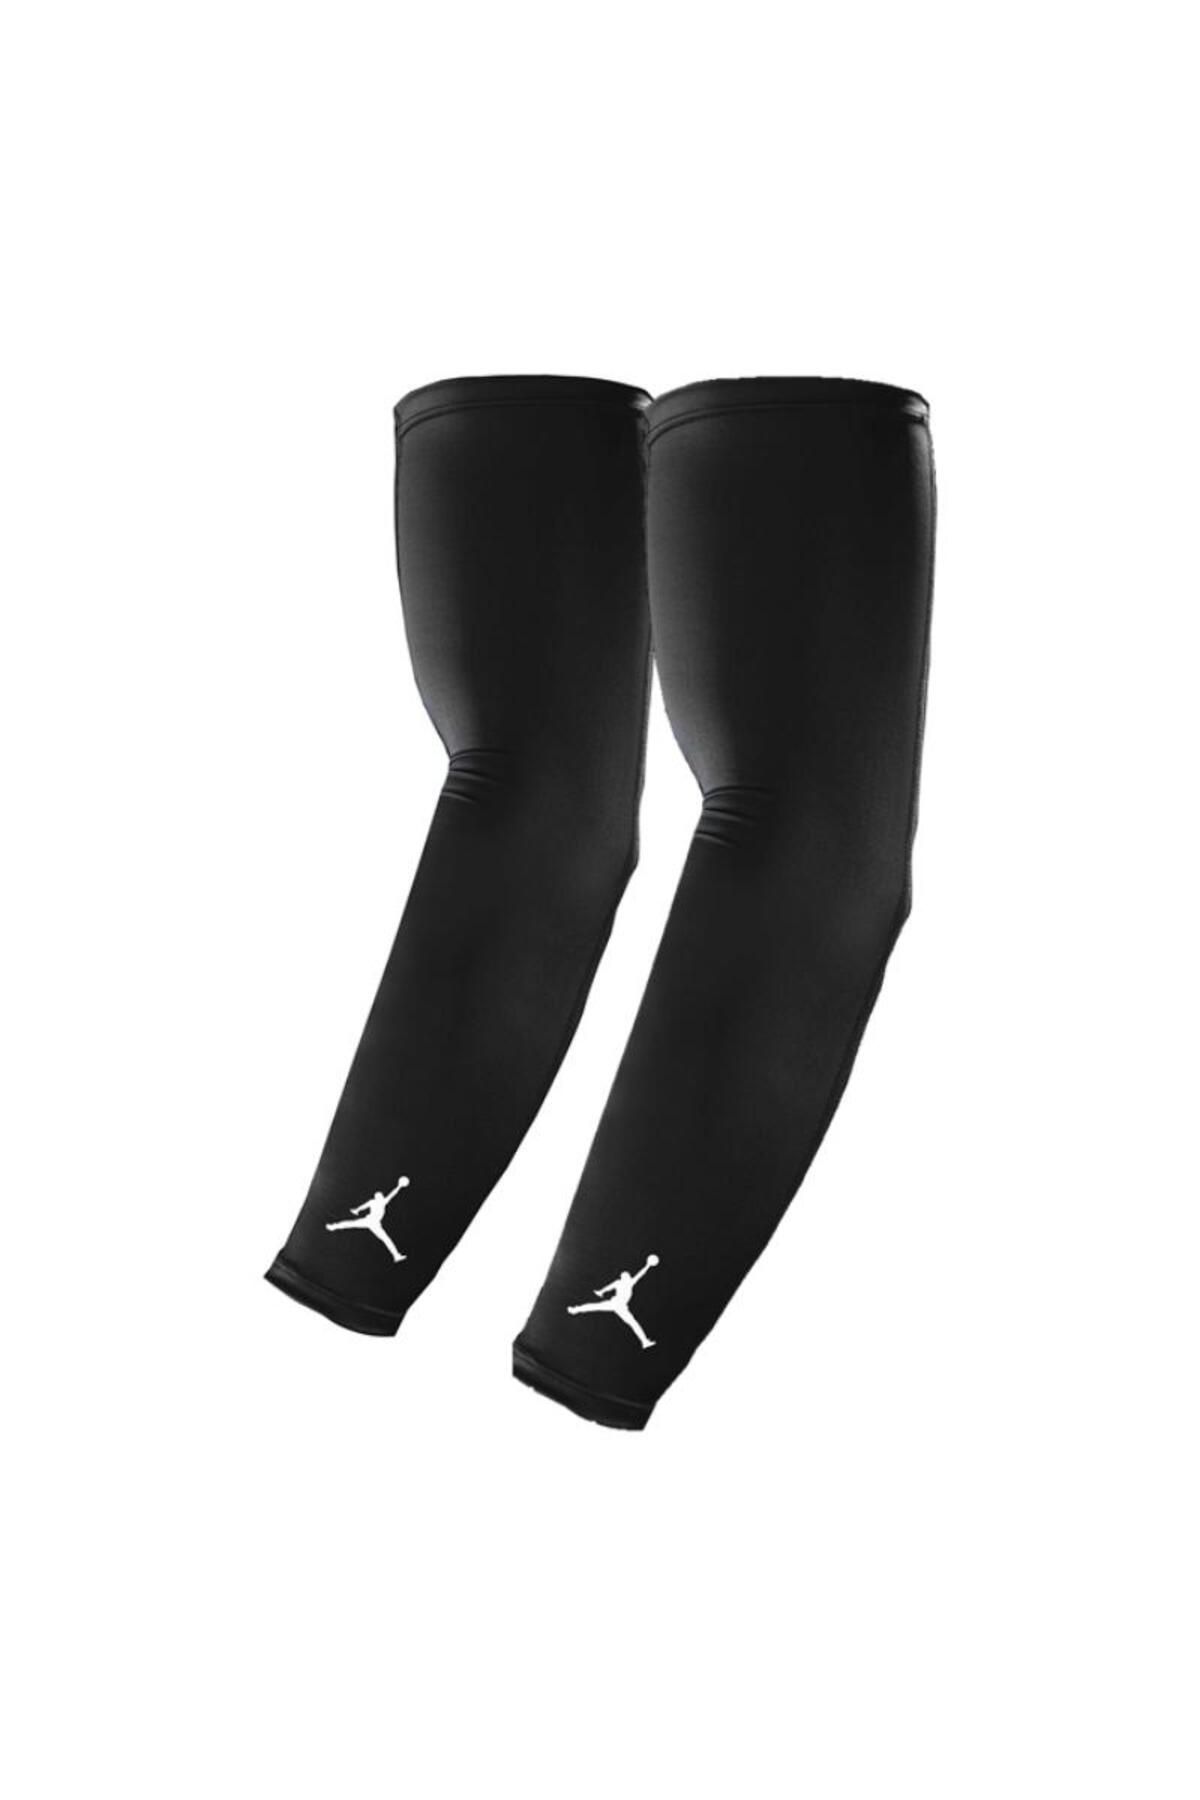 Nike Unisex Siyah Kolluk J.ks.04.010.lx-siyah